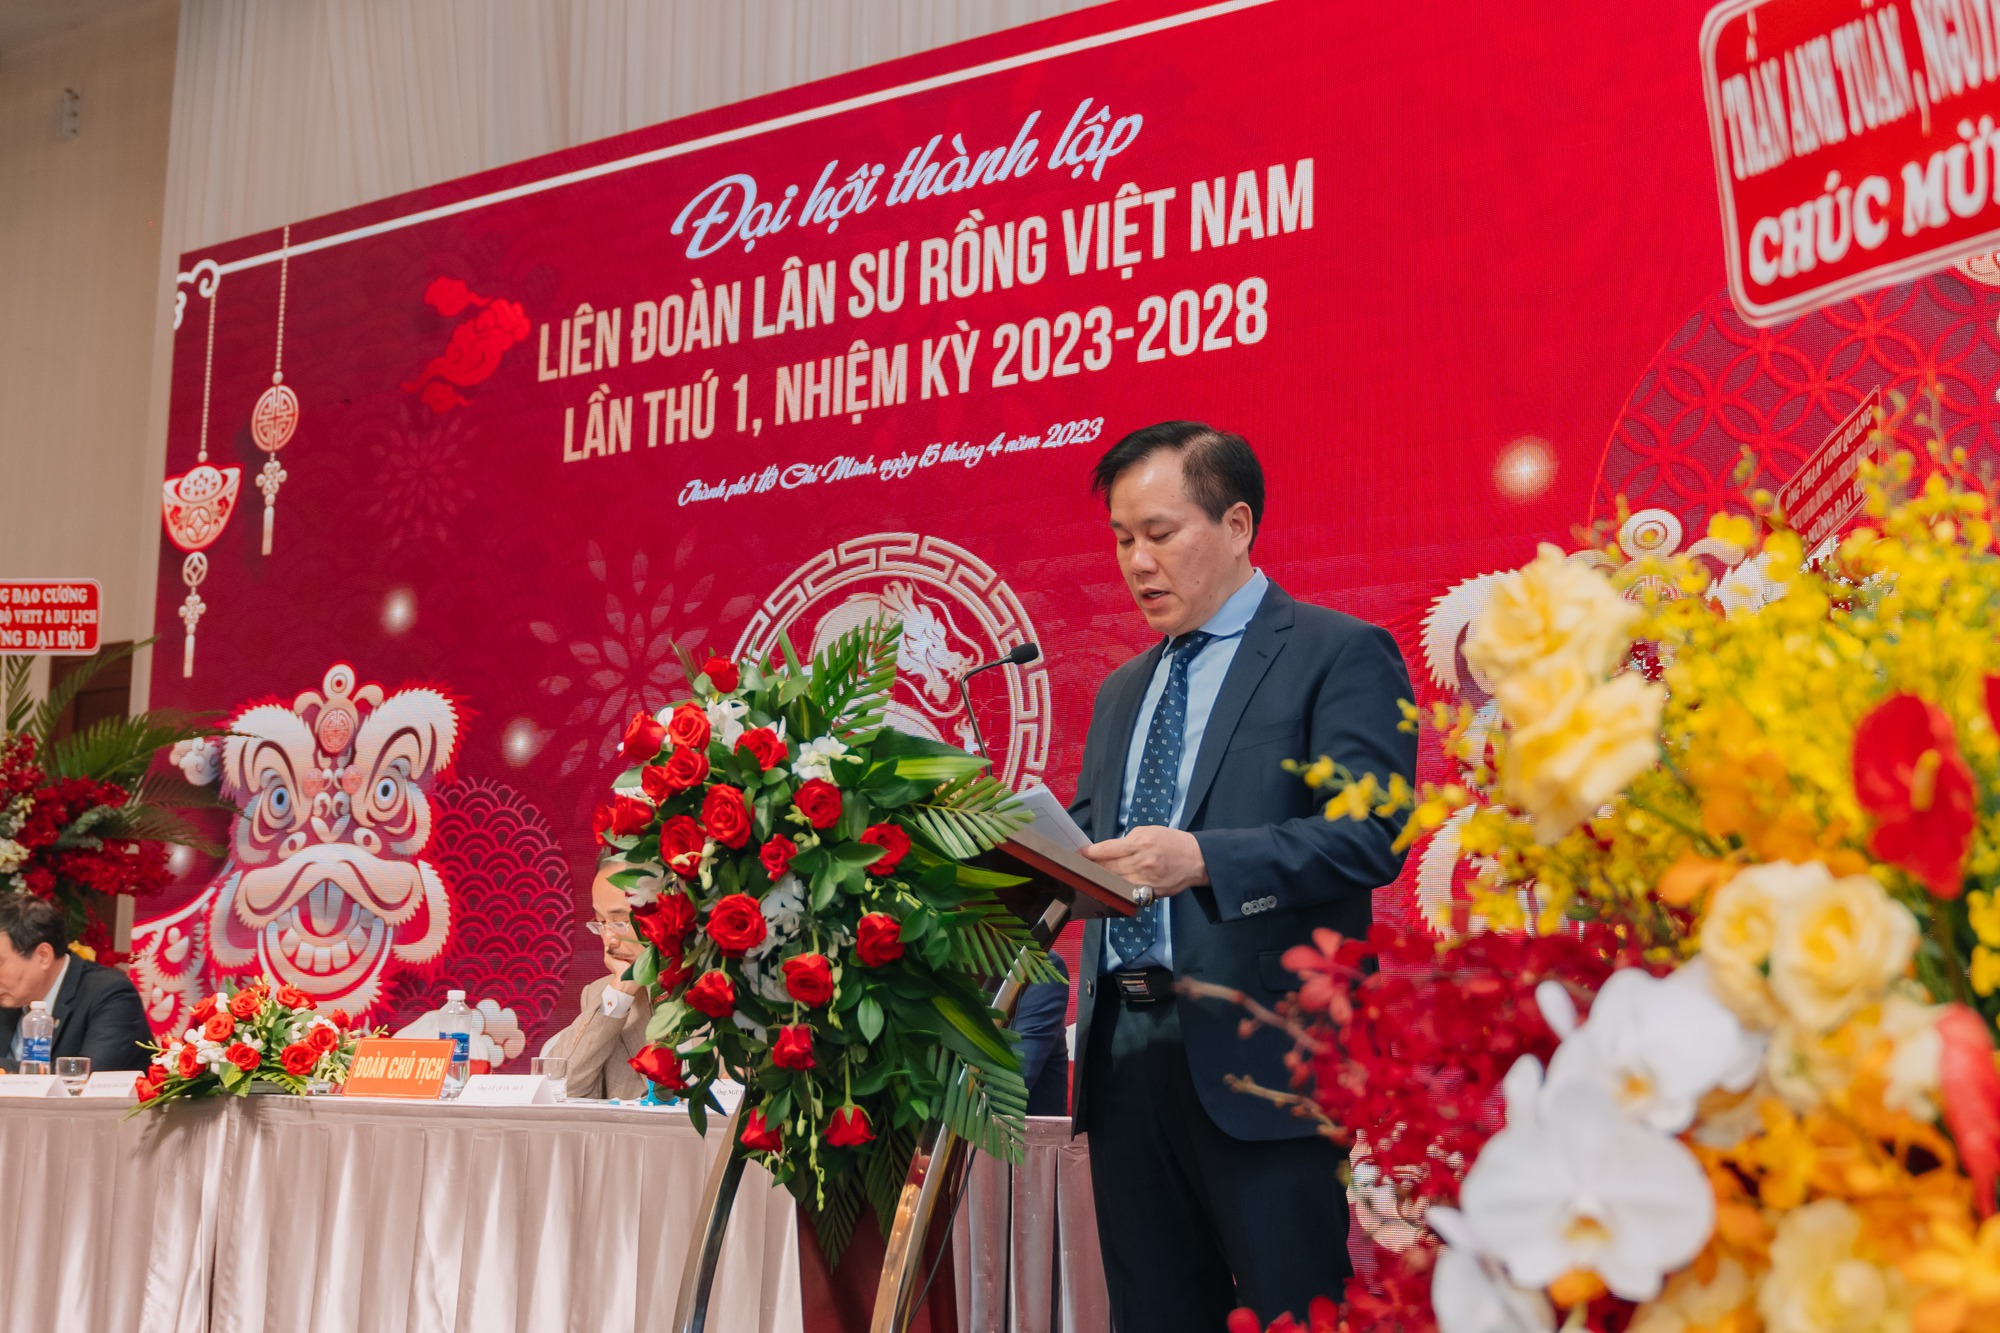 Thành lập Liên đoàn Lân Sư Rồng Việt Nam, thúc đẩy phát triển năng khiếu cho giới trẻ - Ảnh 3.